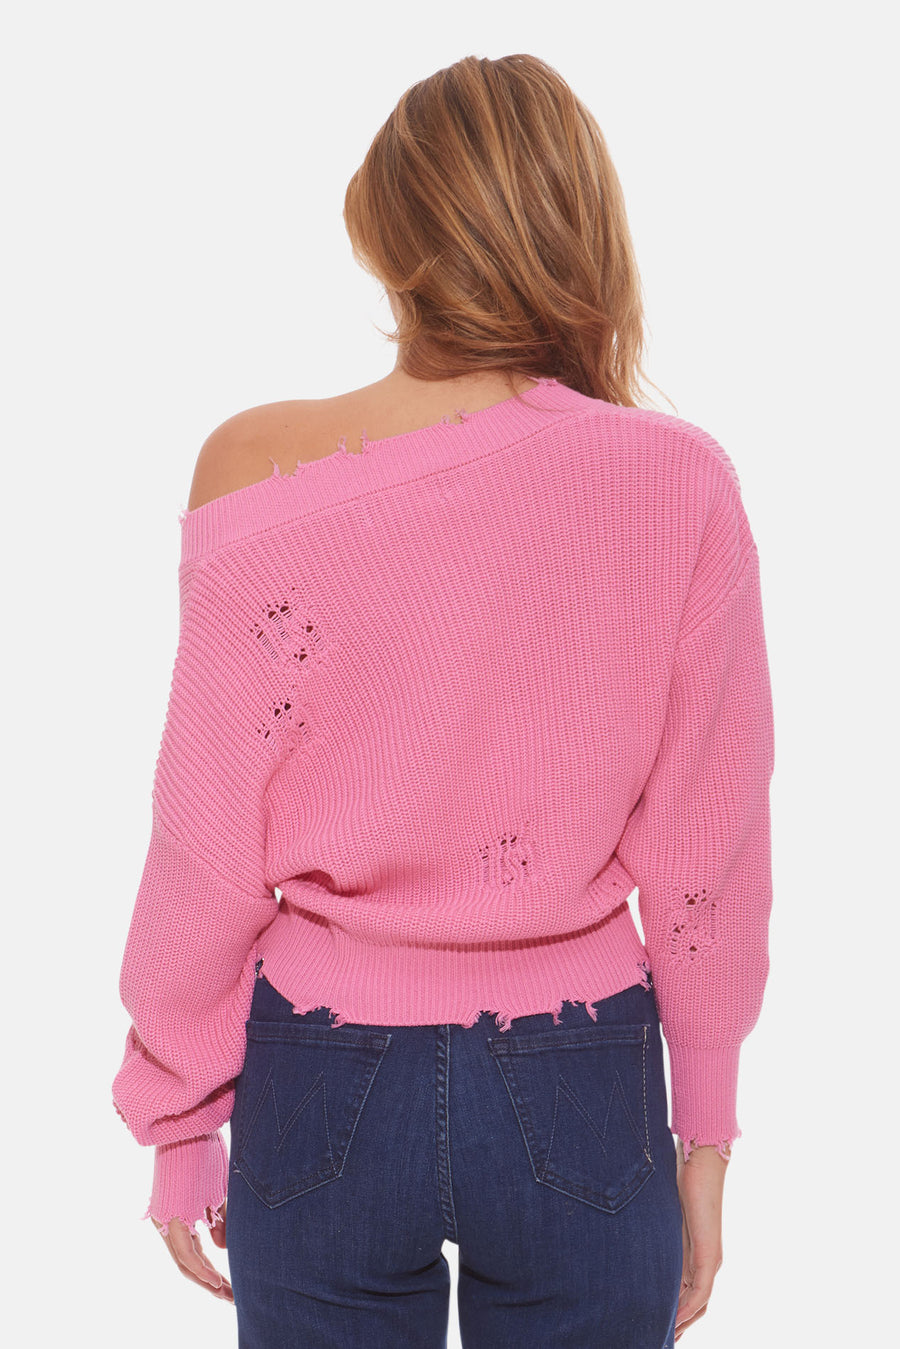 Syd Sweater Malibu Pink